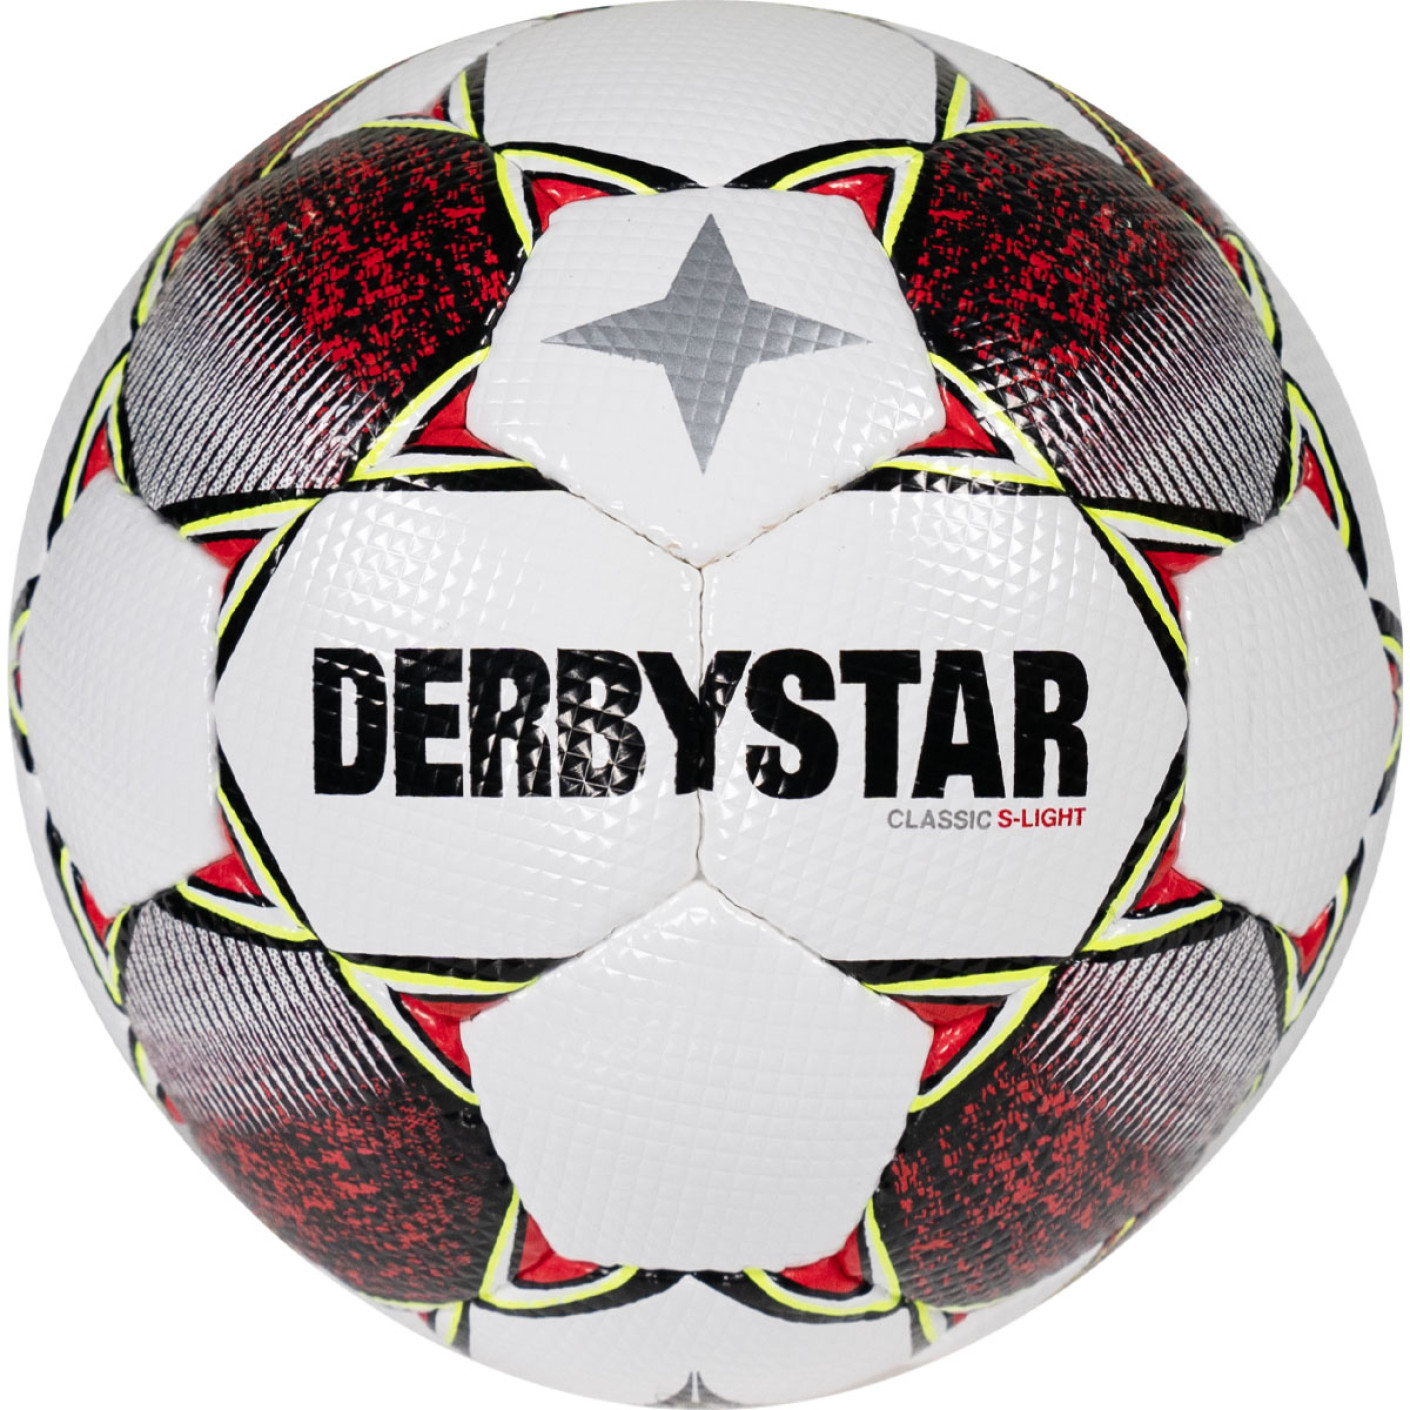 Derbystar Classic S-Light II Voetbal 4 x 3 Vlakken Maat 4 Wit Rood Geel